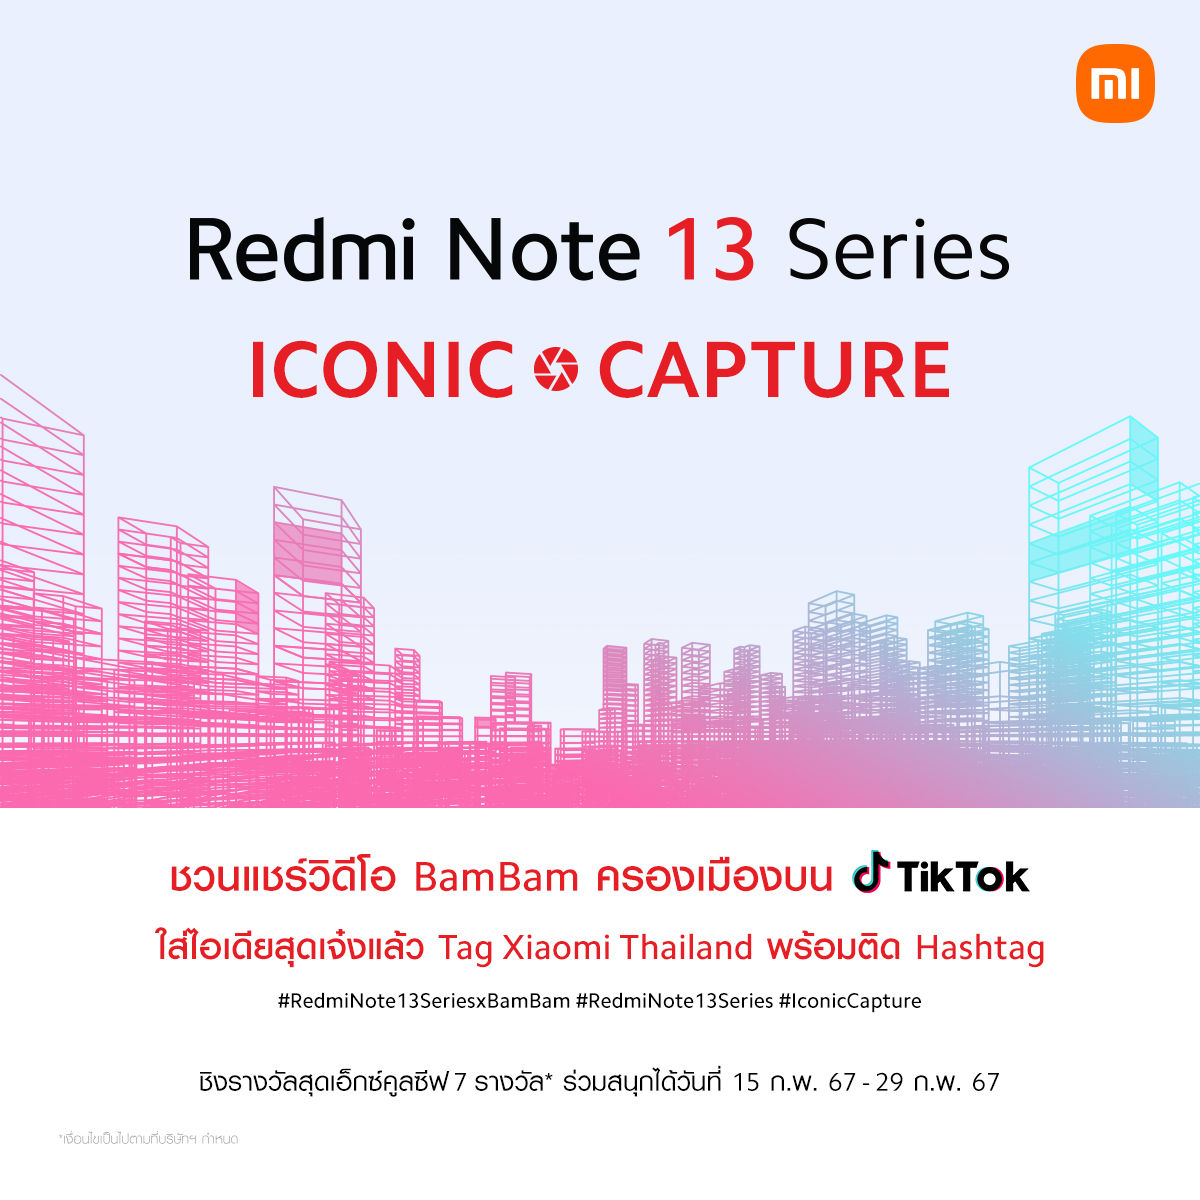 เสียวหมี่ชวนร่วมกิจกรรม ‘Redmi Note 13 Series ICONIC CAPTURE’ ลุ้น Redmi Note 13 Pro+ 5G + ลายเซนต์ BamBam 